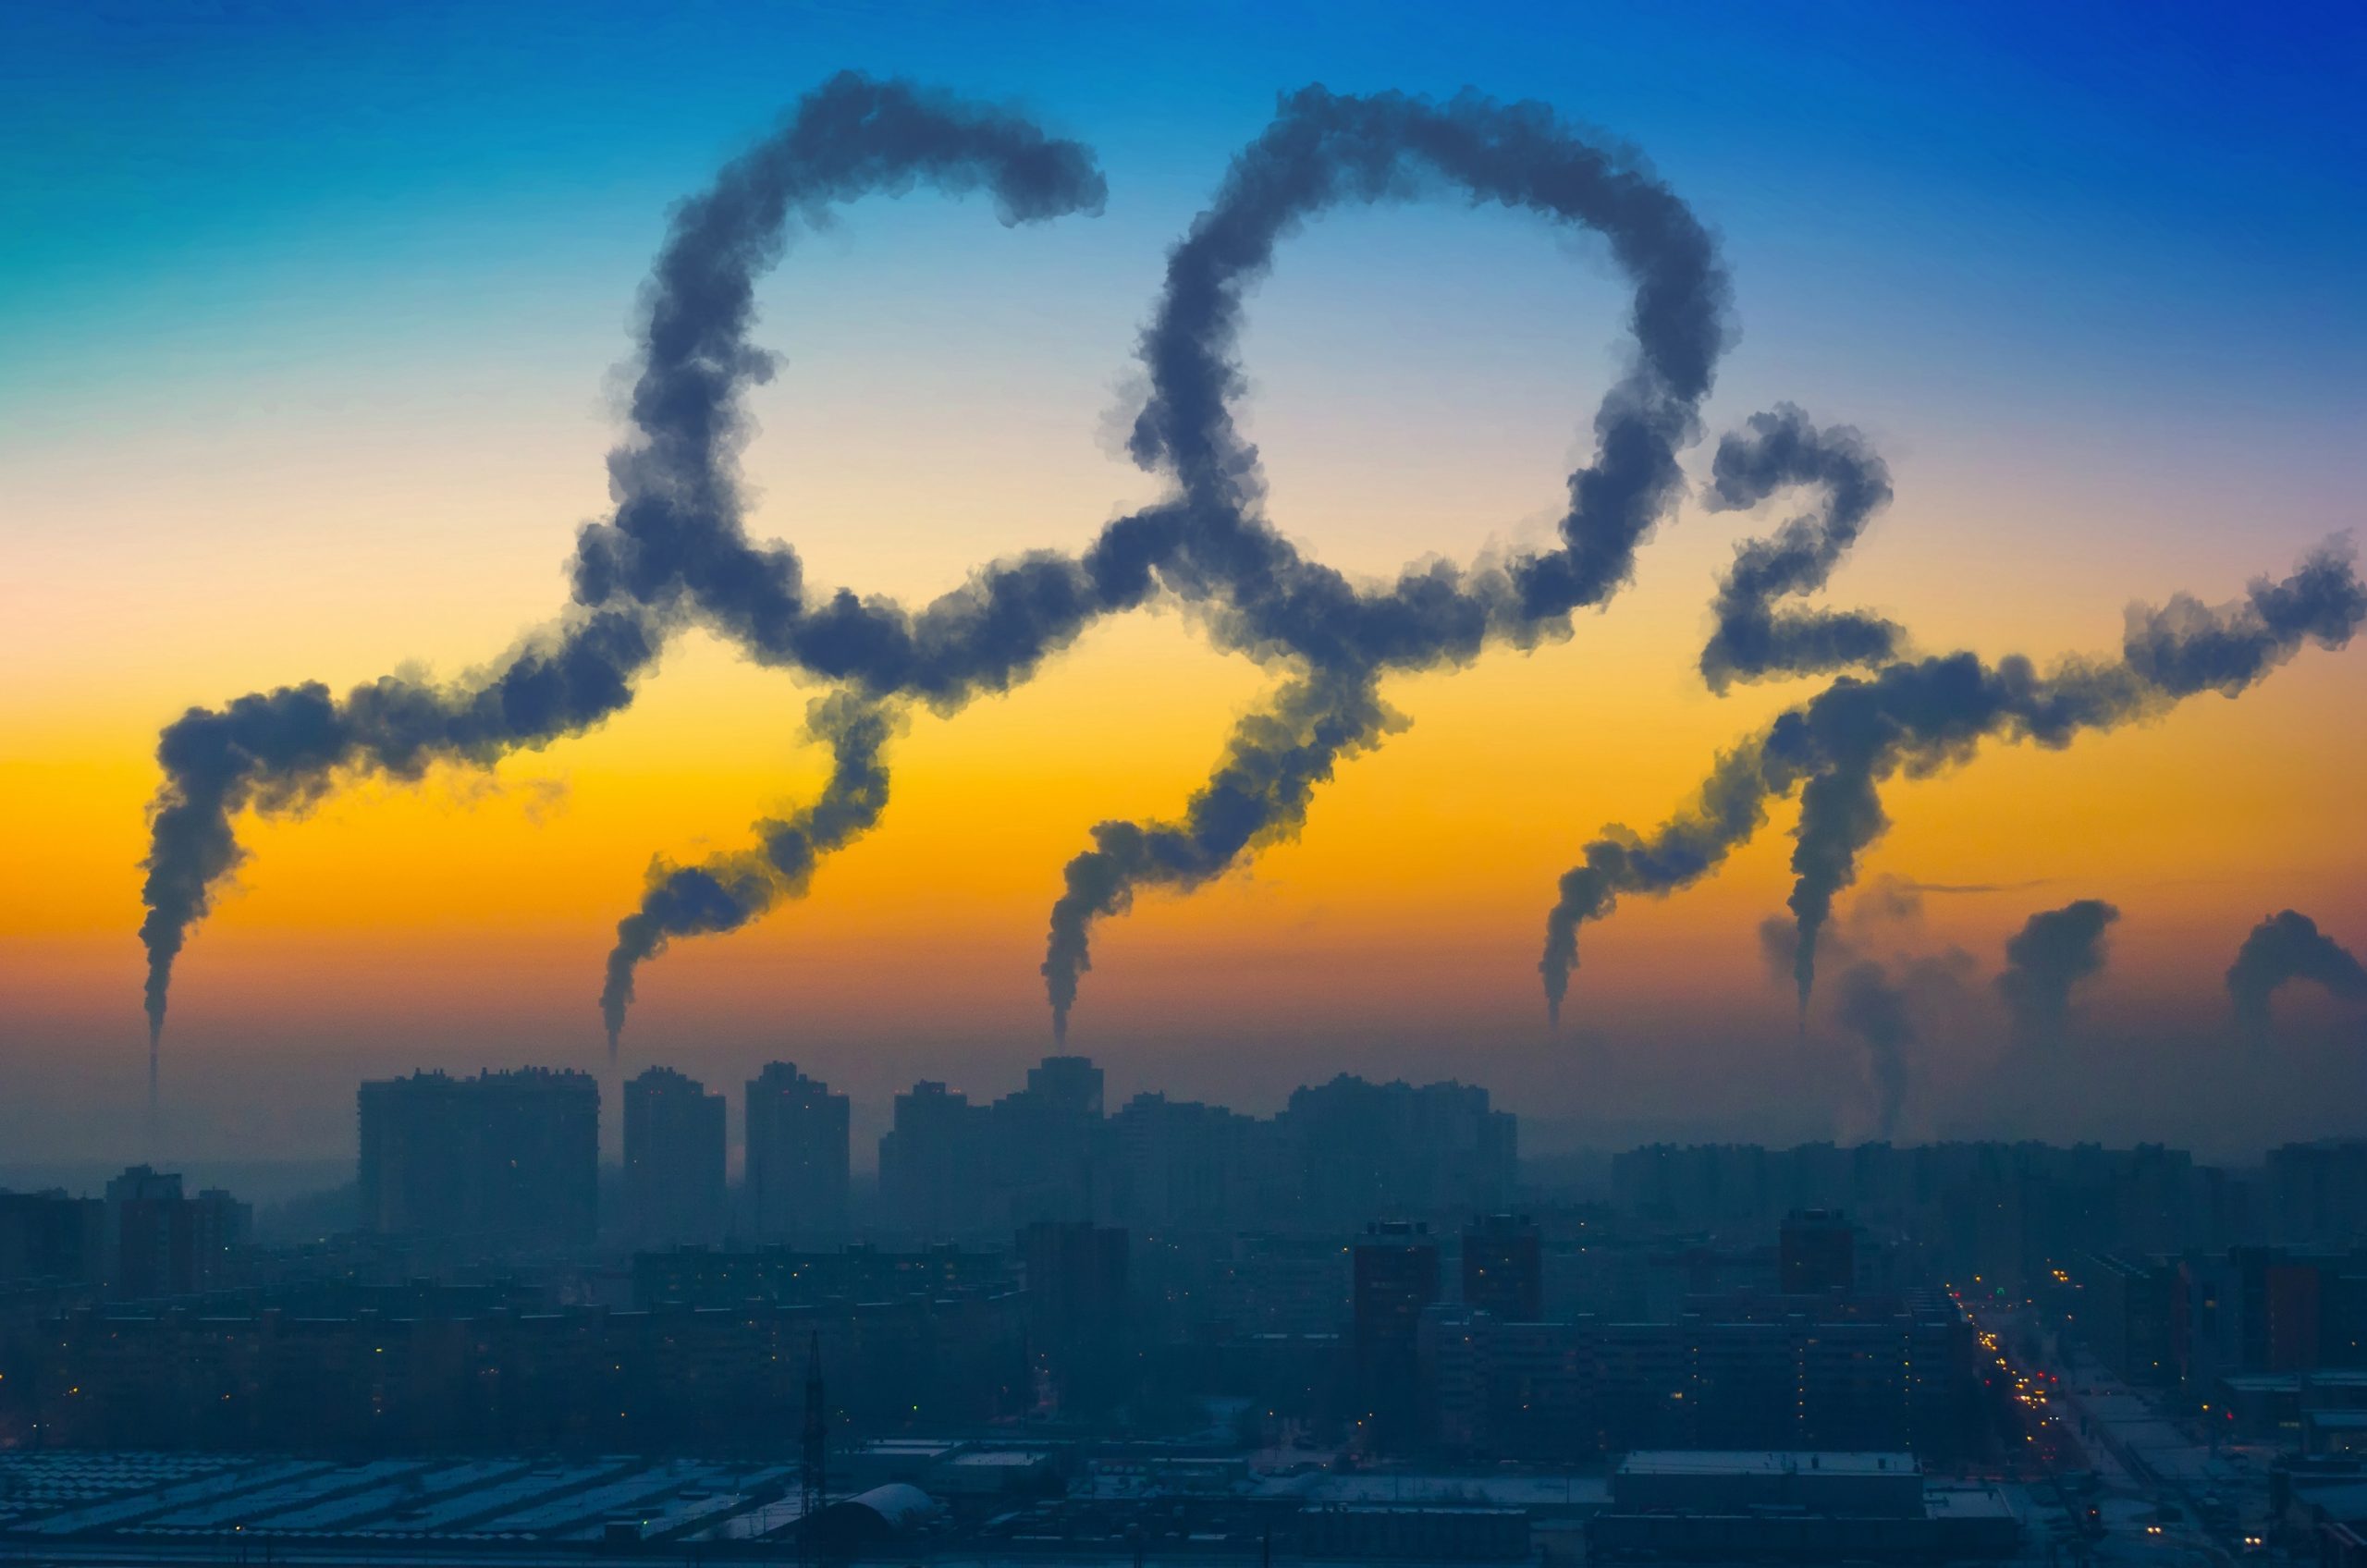 دی اکسید کربن و نقش آن در گرم شدن زمین